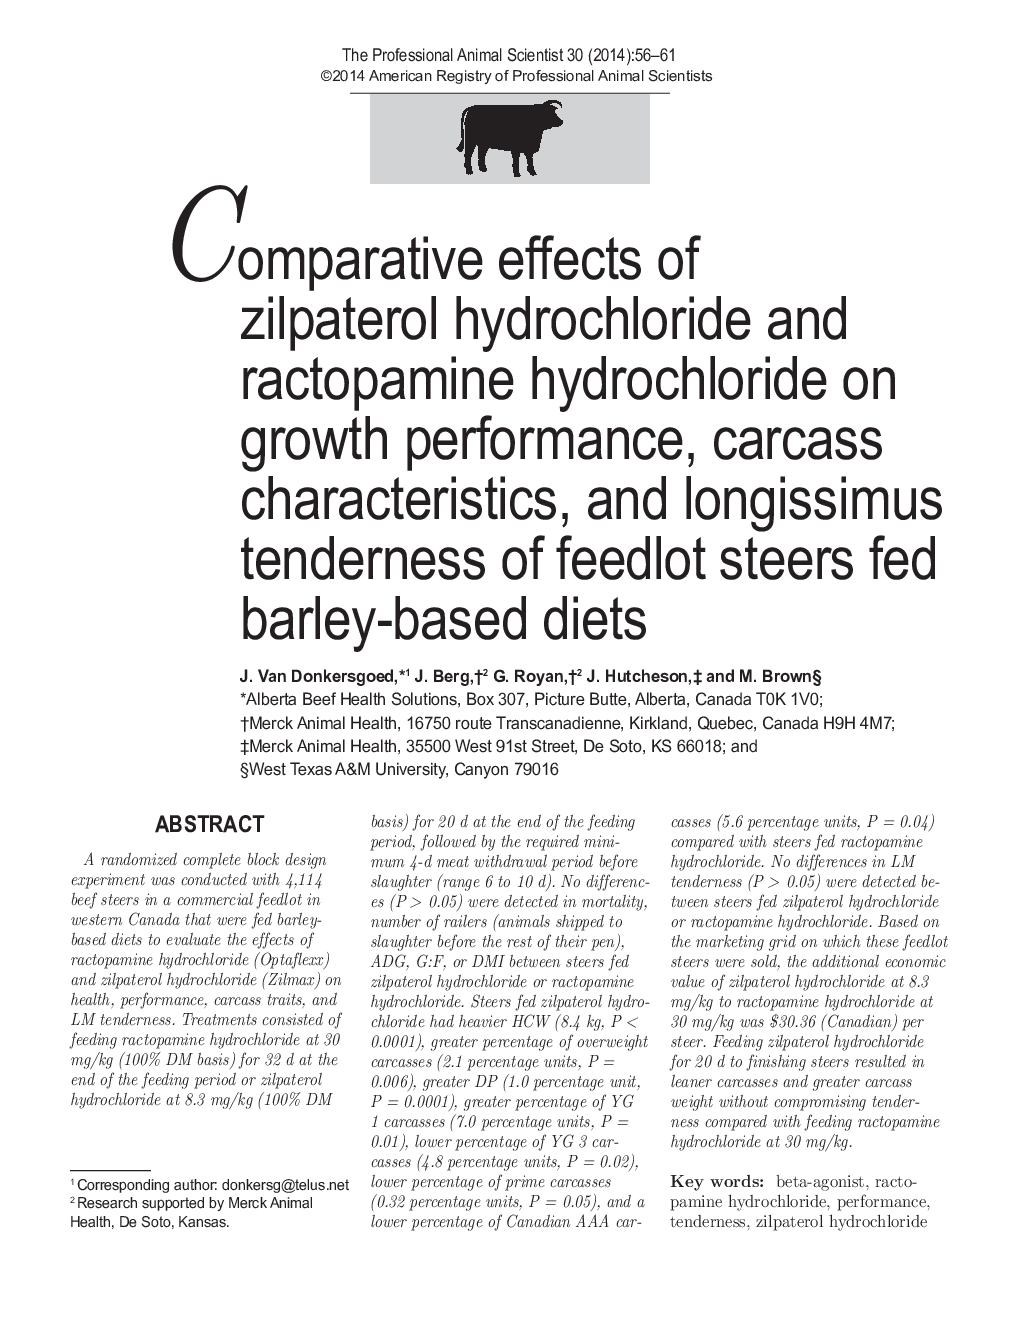 اثرات تطبیقی ​​زیلپاترول هیدروکلراید و هیدروکلراید راکتوپامین بر عملکرد رشد، ویژگی های لاشه و حساسیت طولانی مدت گوساله های خوراک دام خوراکی مبتنی بر جو 